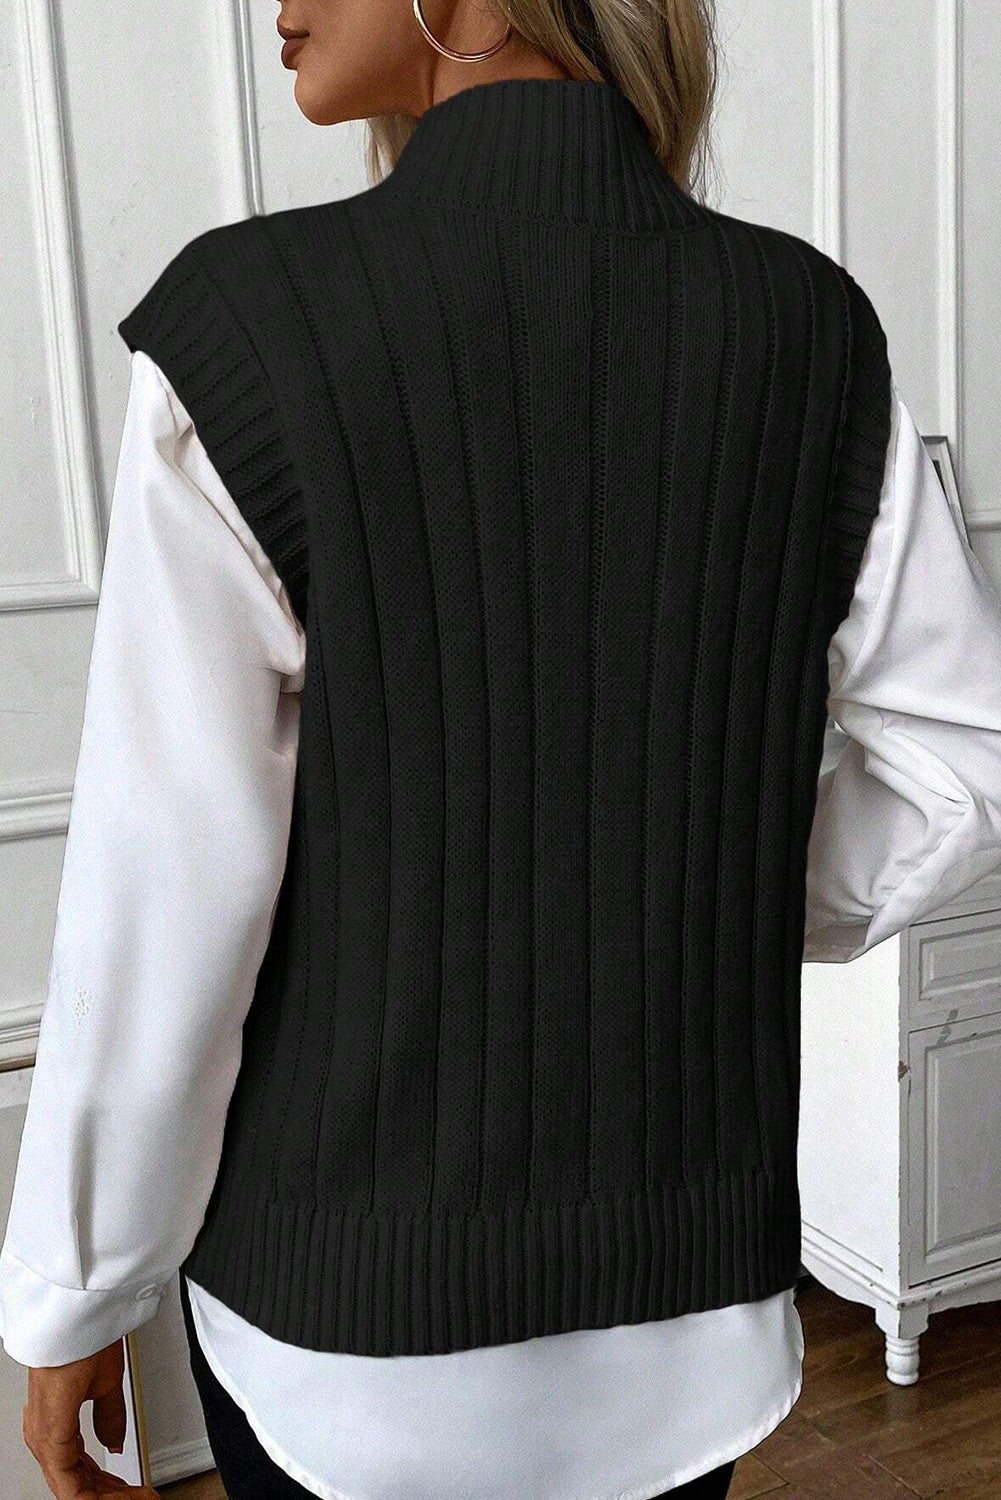 Crni džemper s visokim ovratnikom od kabla